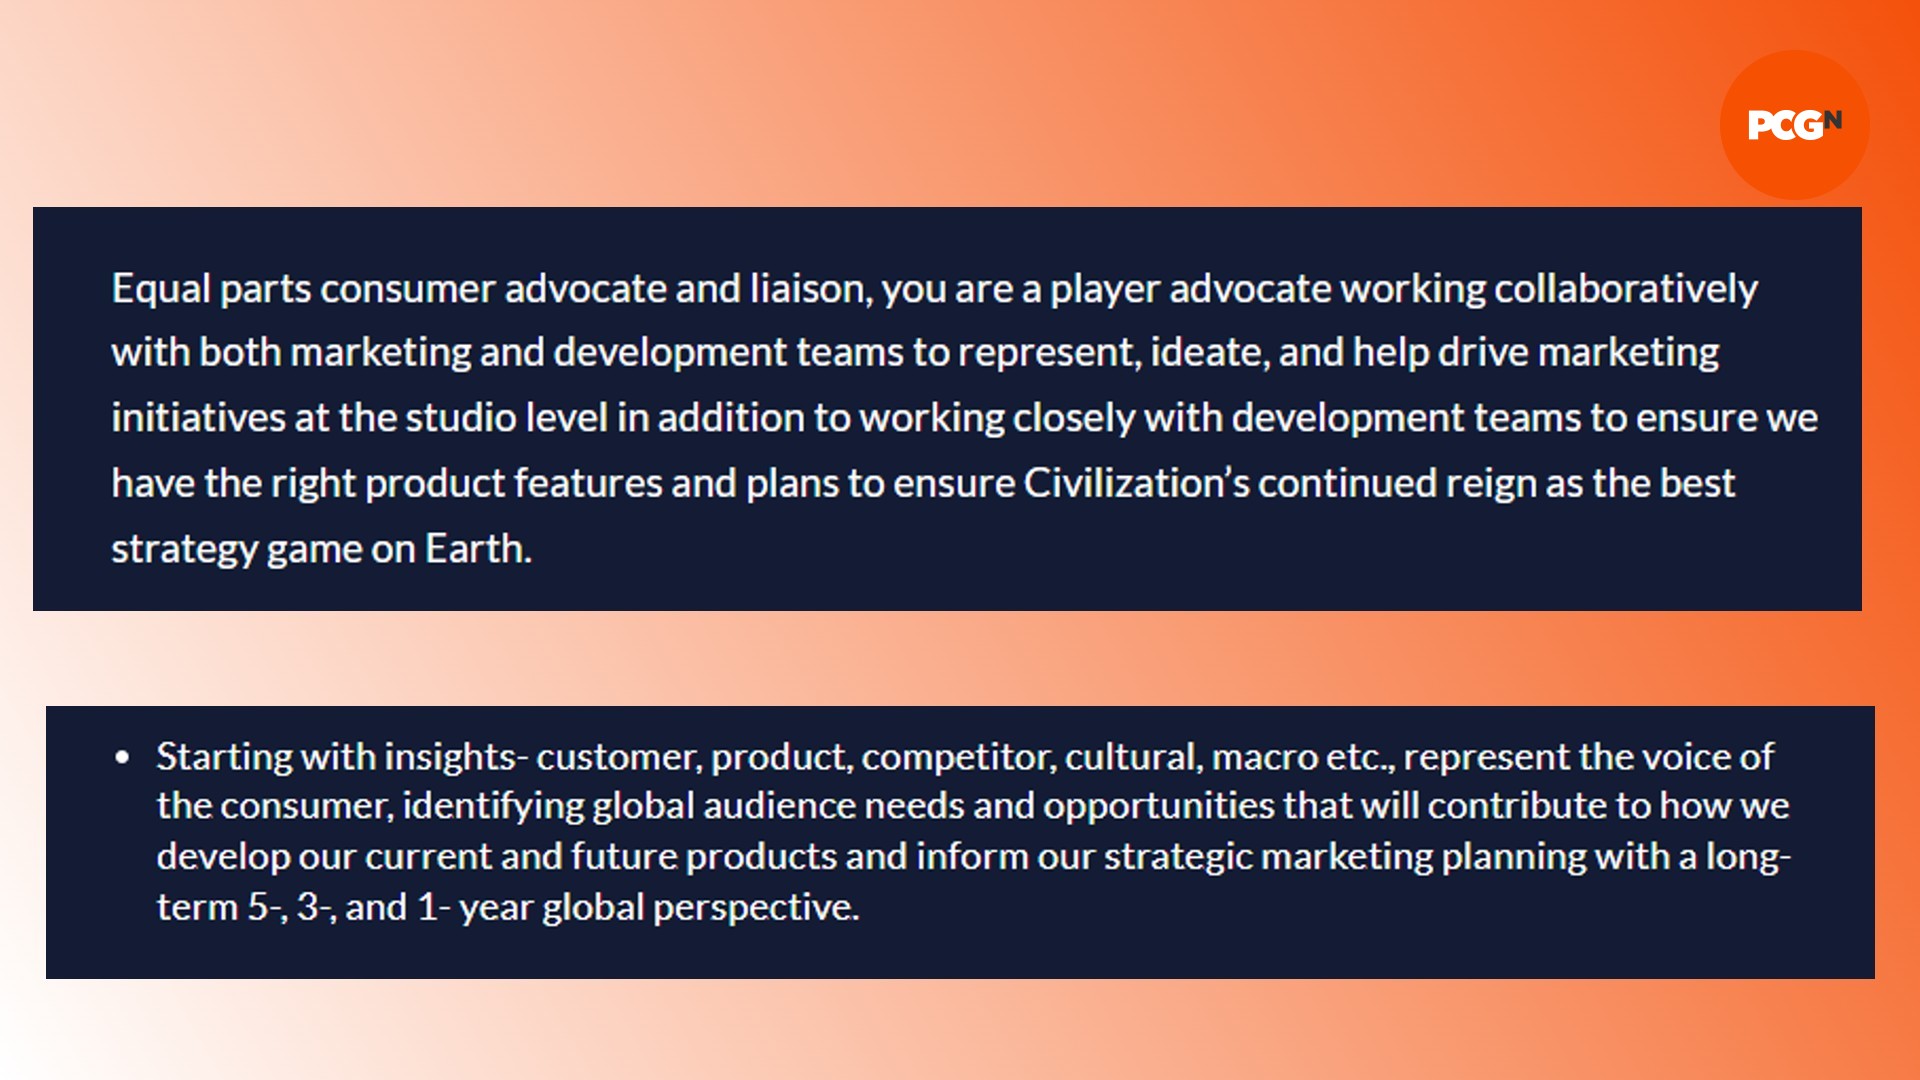 Detalles de Civilization 7 Firaxis: una lista de Firaxis sobre el juego de estrategia Civilization